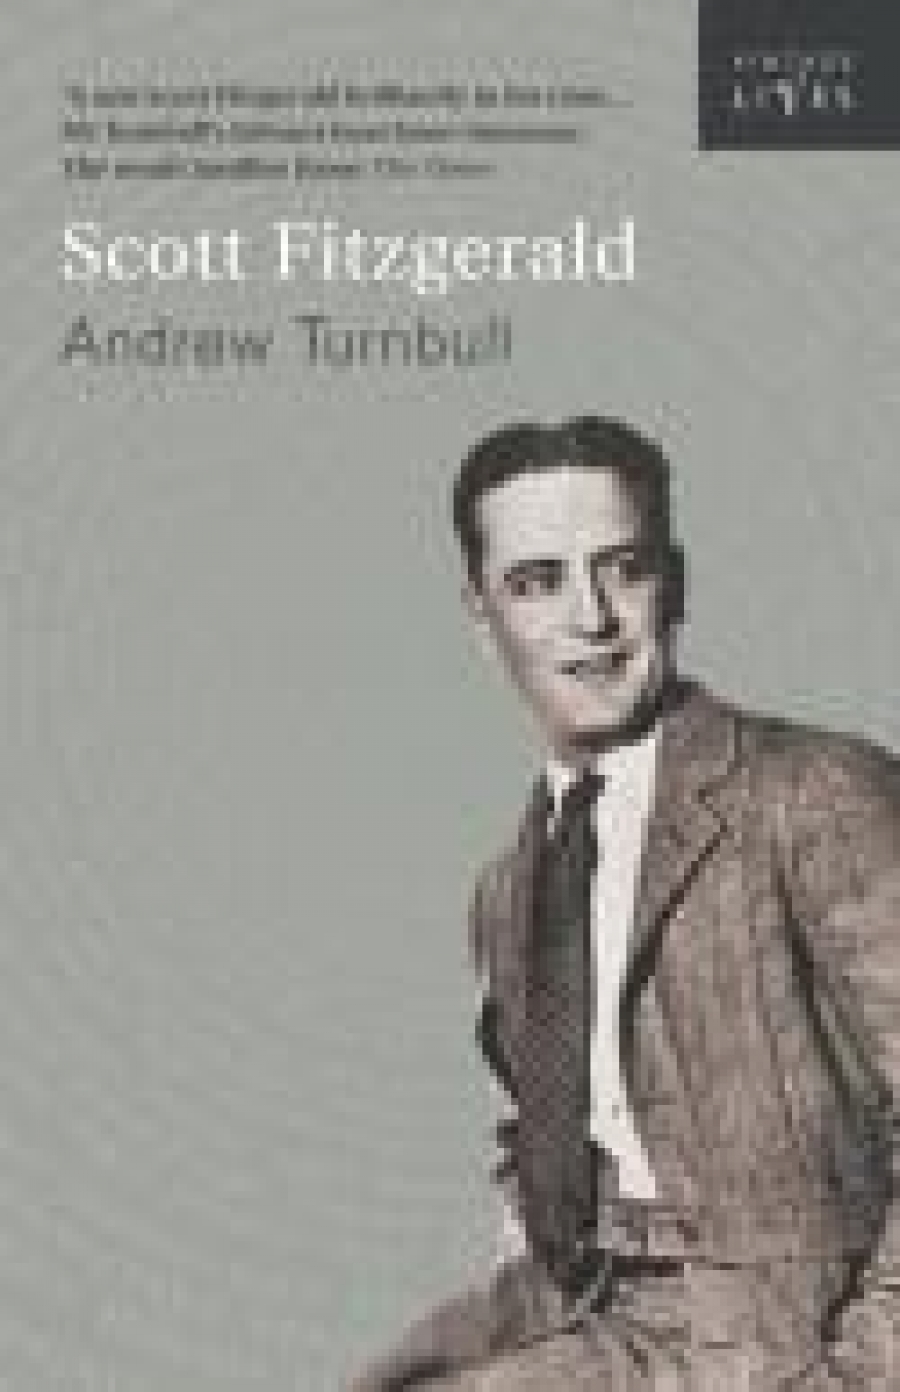 Andrew, Turnbull Scott Fitzgerald 